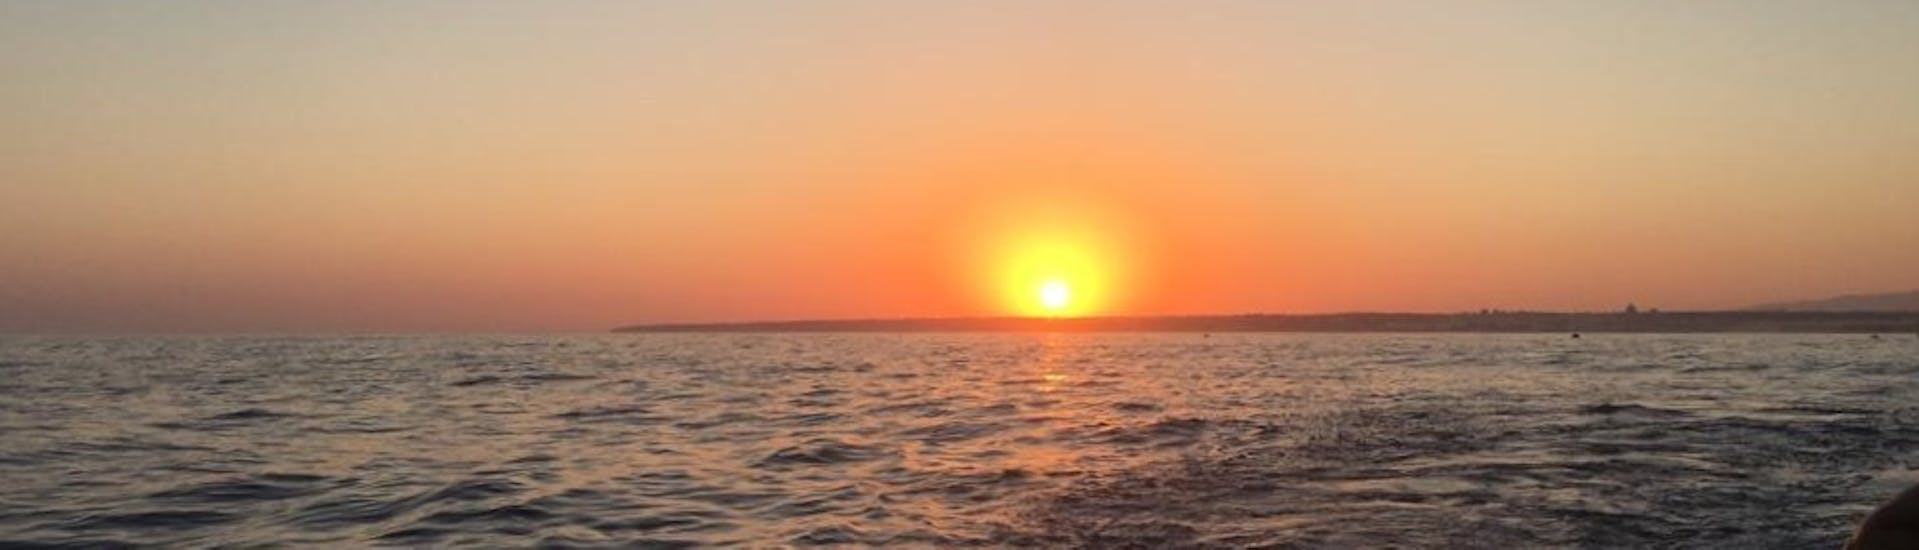 Balade en catamaran Albufeira - Benagil avec Baignade & Coucher du soleil.